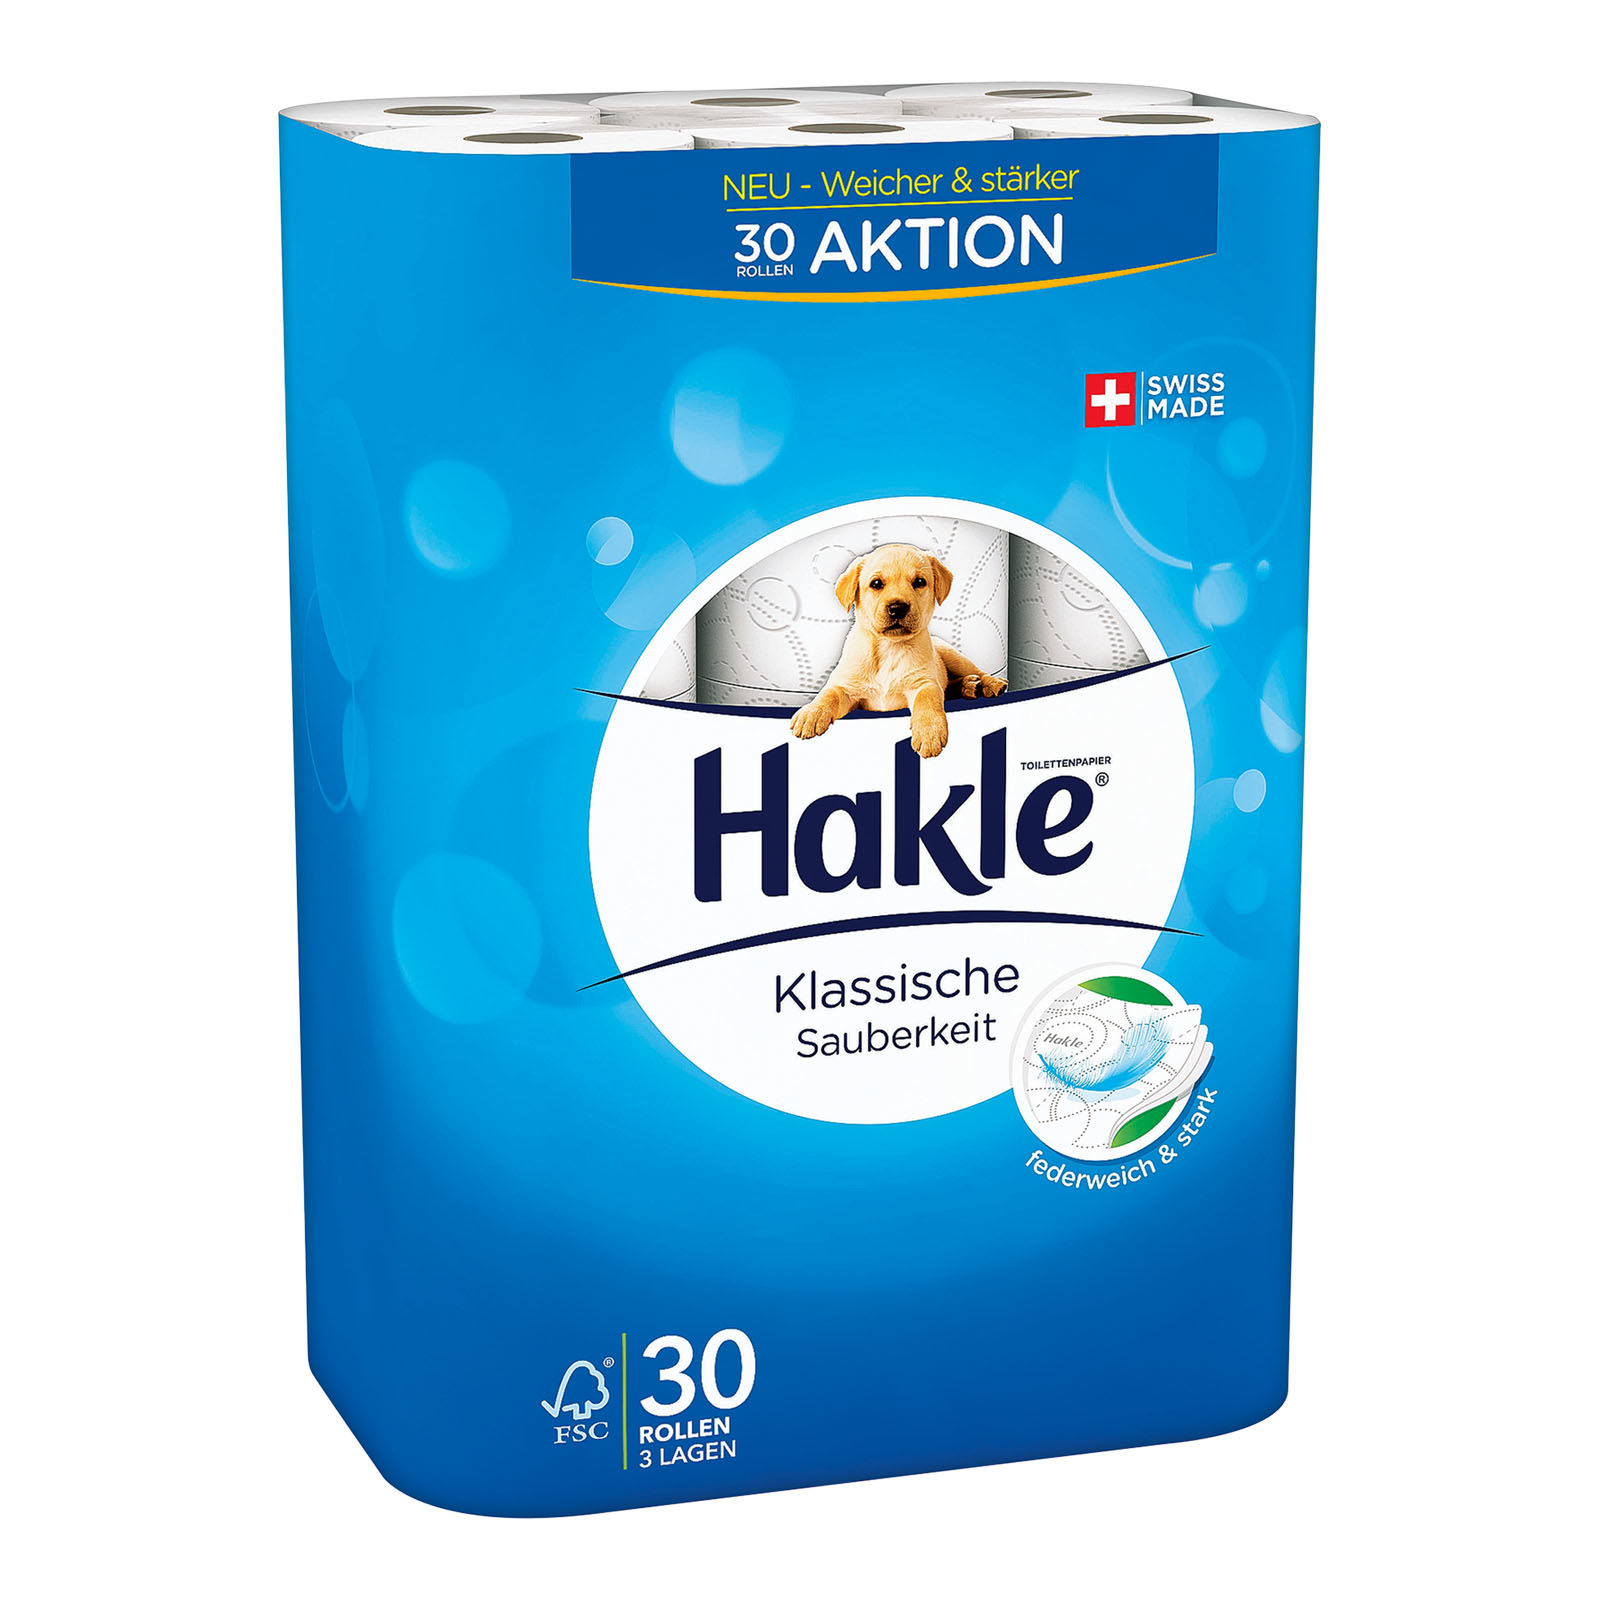 Hakle Klassische Sauberkeit FSC white - 1 Sack à 30 Rollen